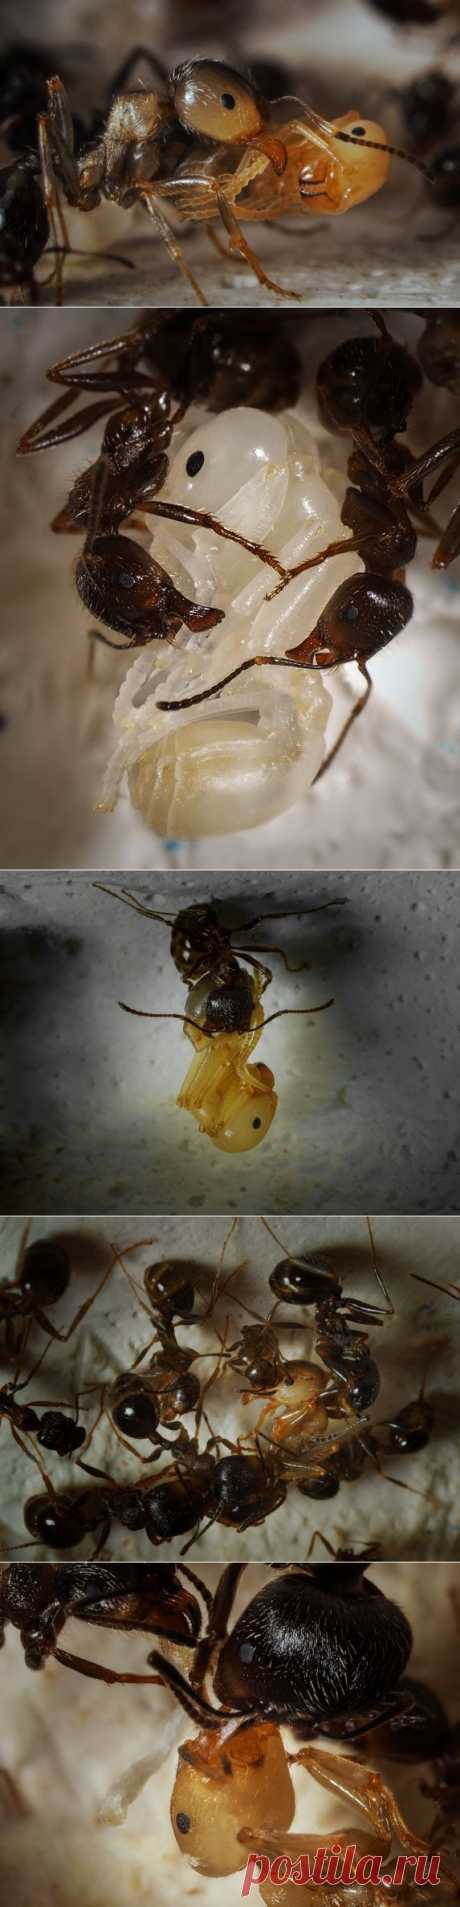 Муравьиный роддом: как рождаются муравьи? Макрофотограф Ирина Козорог - Фотоискусство